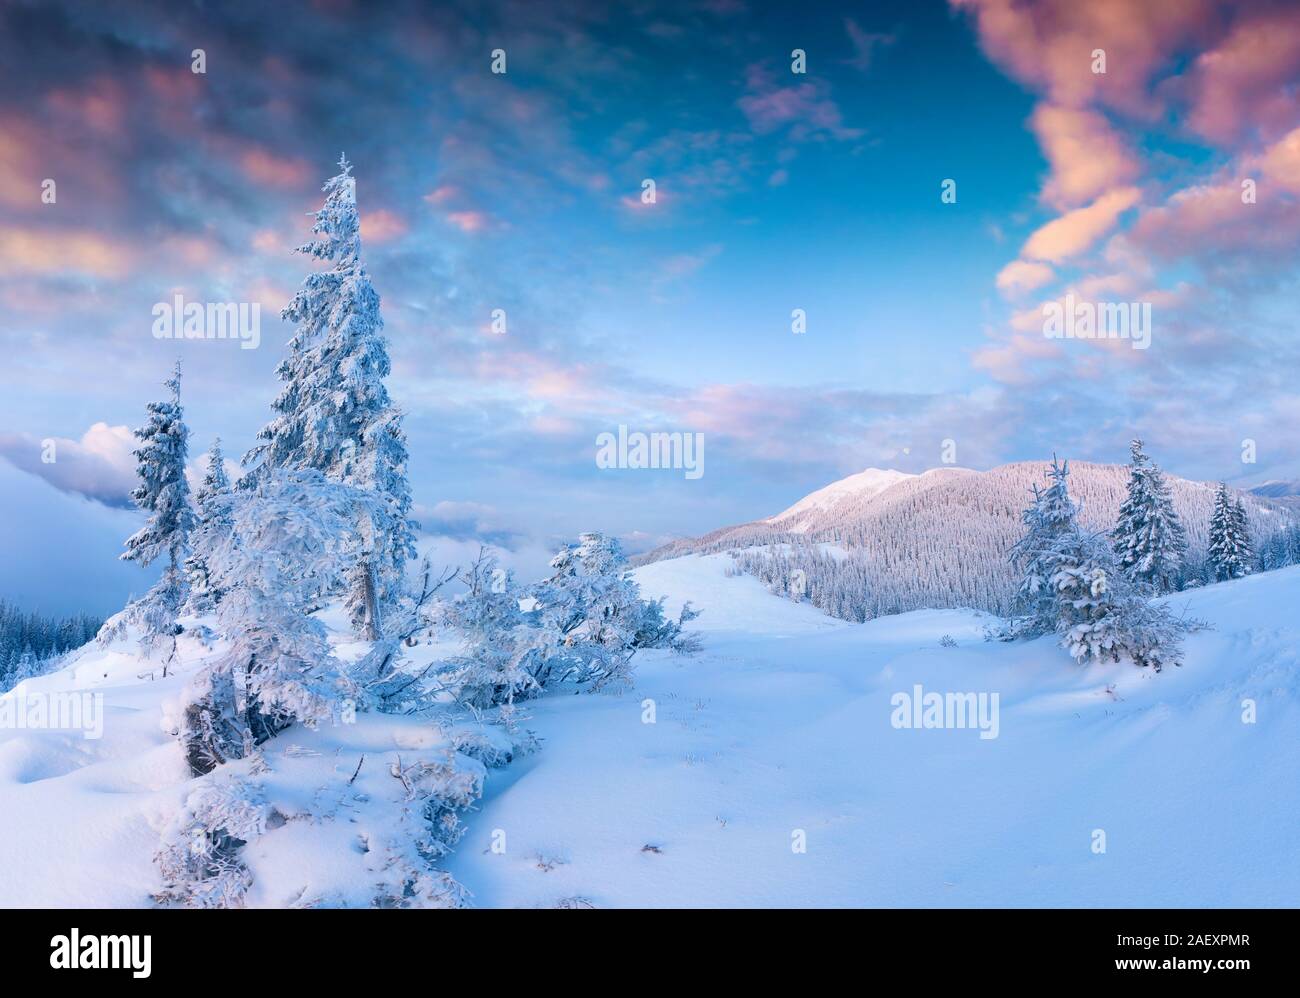 Incredibile scena di Natale in montagna. Inverno colorato sunrise nella mattinata nebbiosa. Carpazi parco nazionale, Ucraina, l'Europa. Stile artistico pos Foto Stock